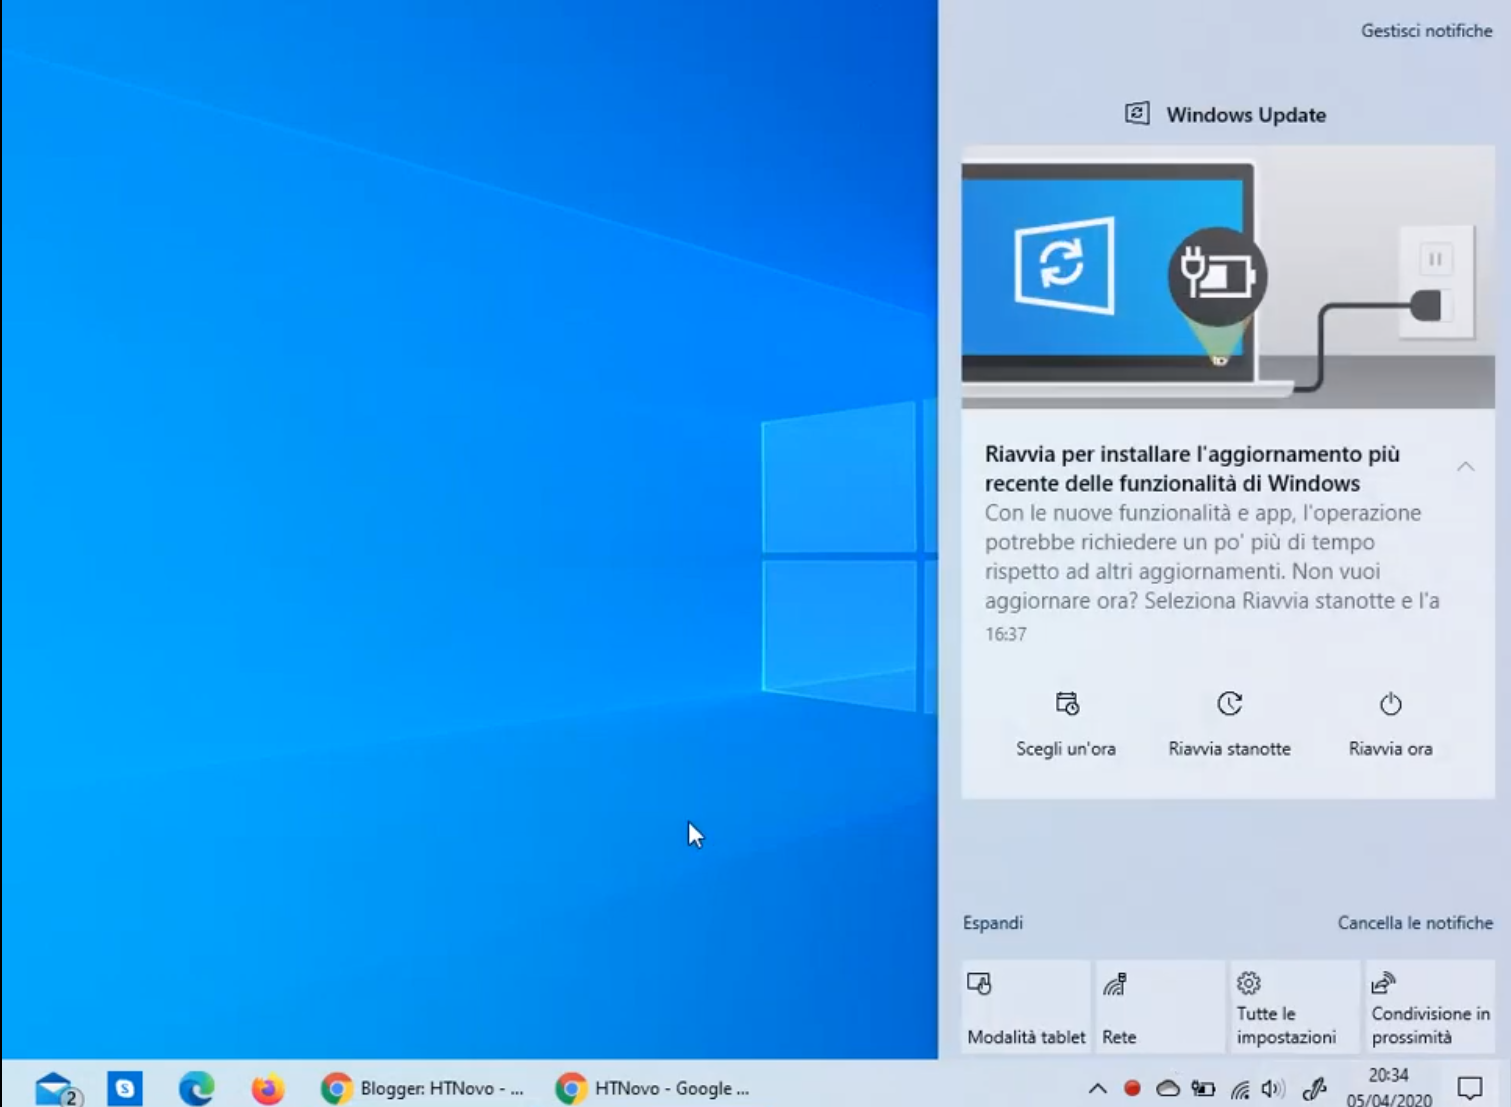 Обновление Windows 10 было прервано принудительно.